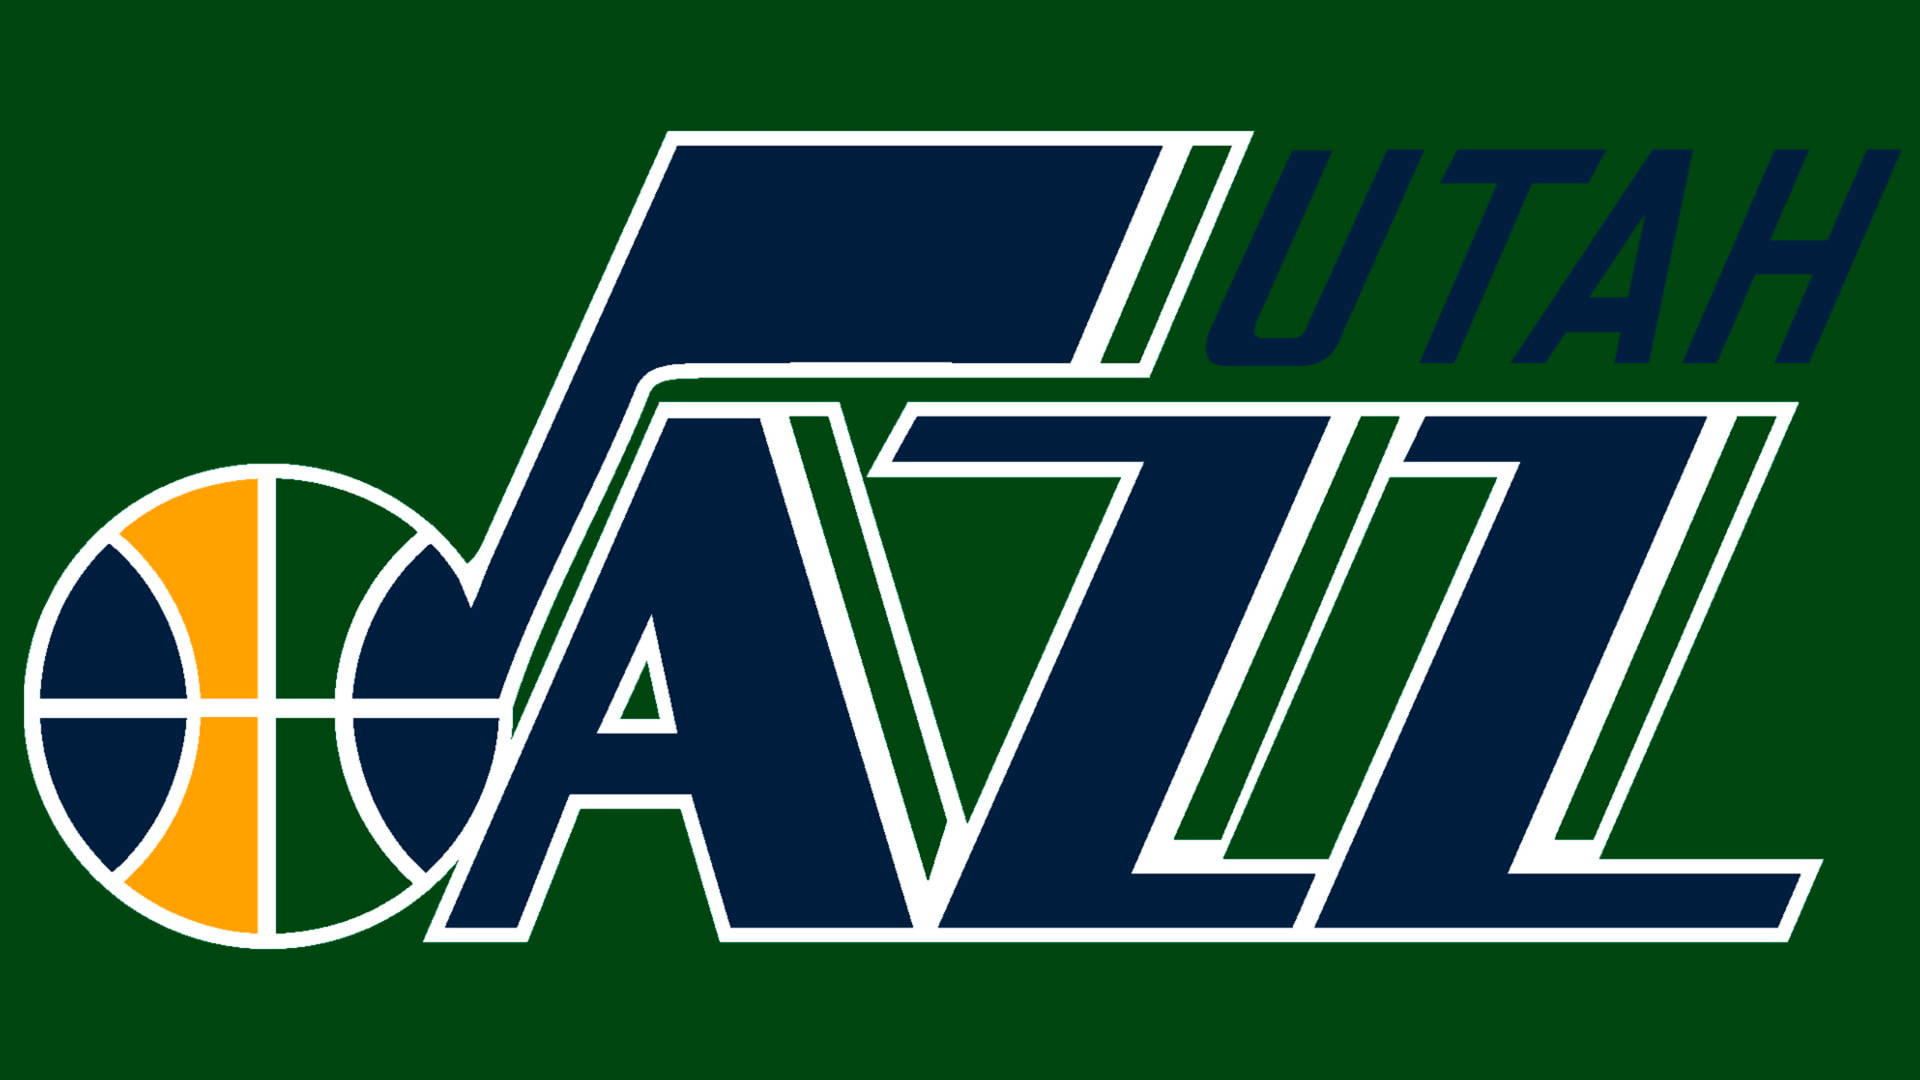 Utah Jazz Name Logo On Green Background